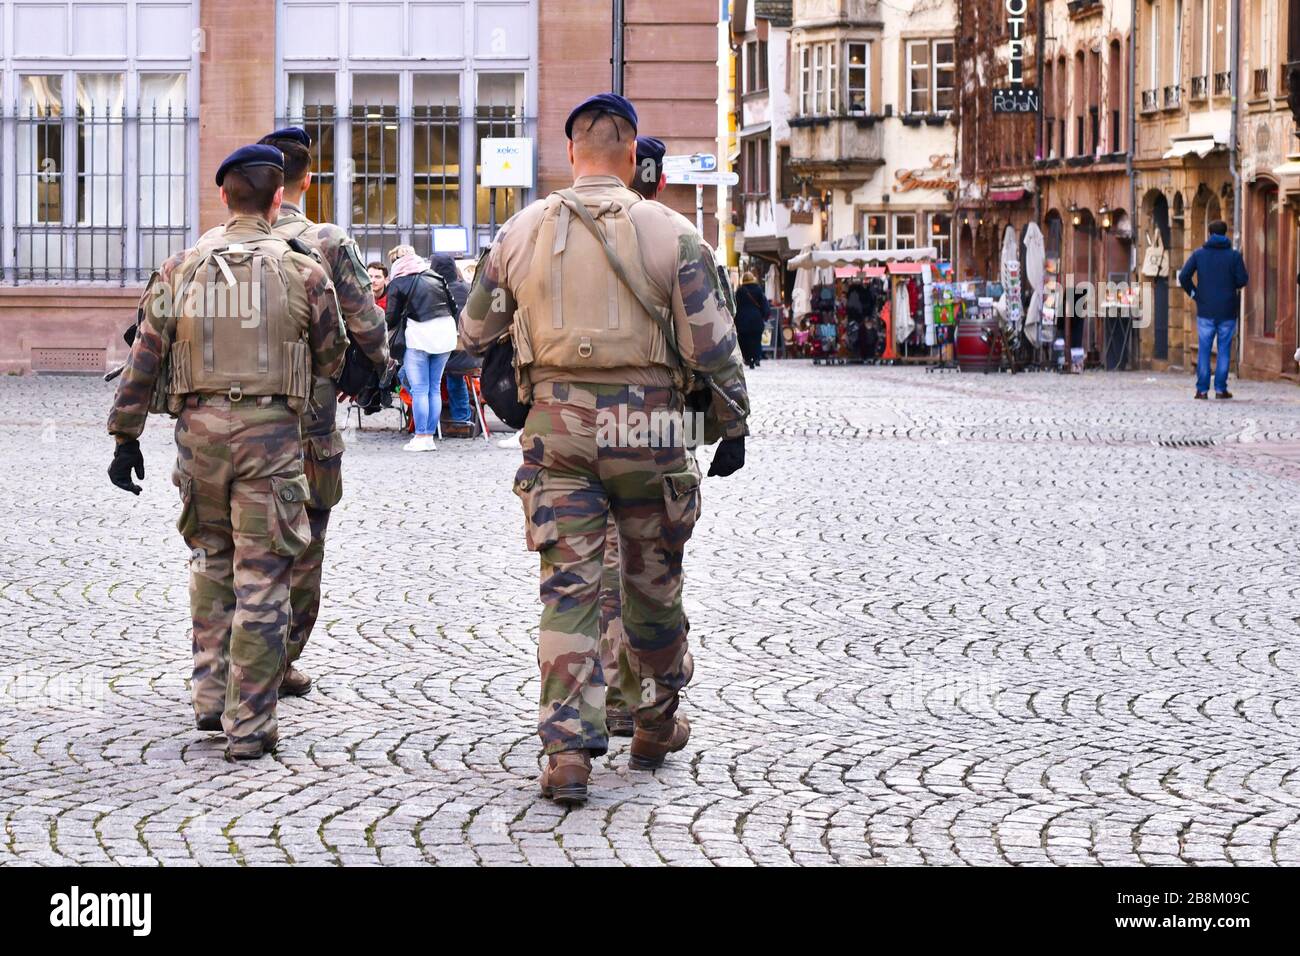 Straßburg, Frankreich - Februar 2020: Soldaten der französischen Sicherheitskräfte in Tarnkleidung patrosen in der historischen Innenstadt von Straßburg Stockfoto